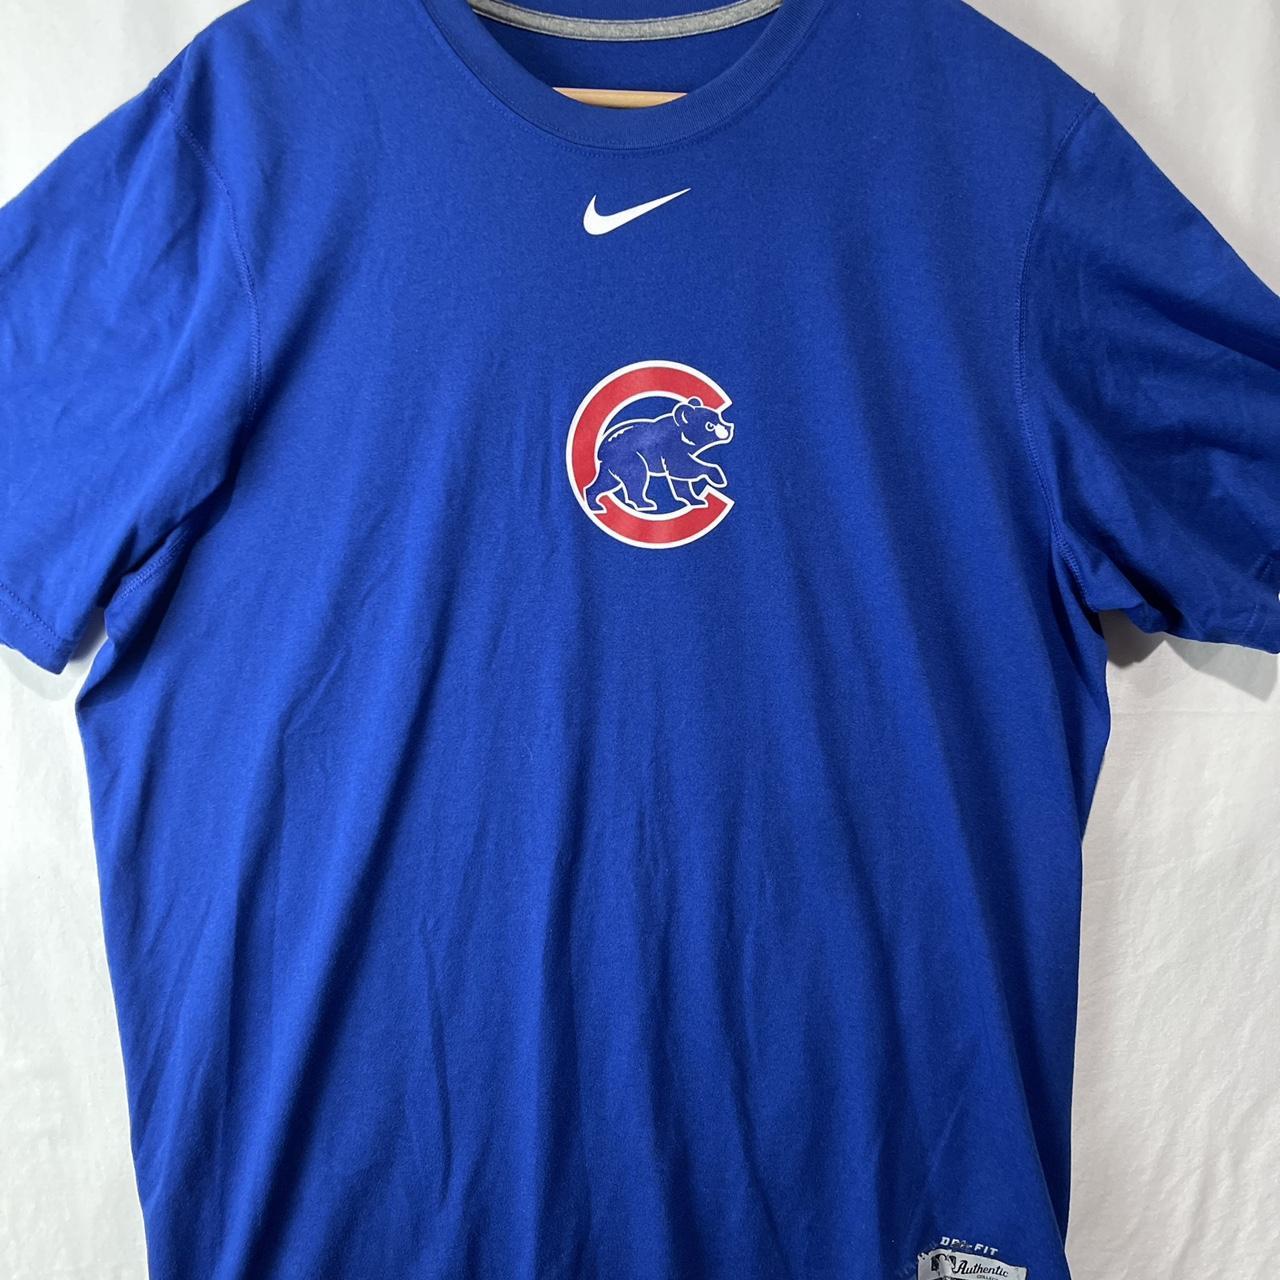 Nike Men's Chicago Cubs MLB Jerseys for sale